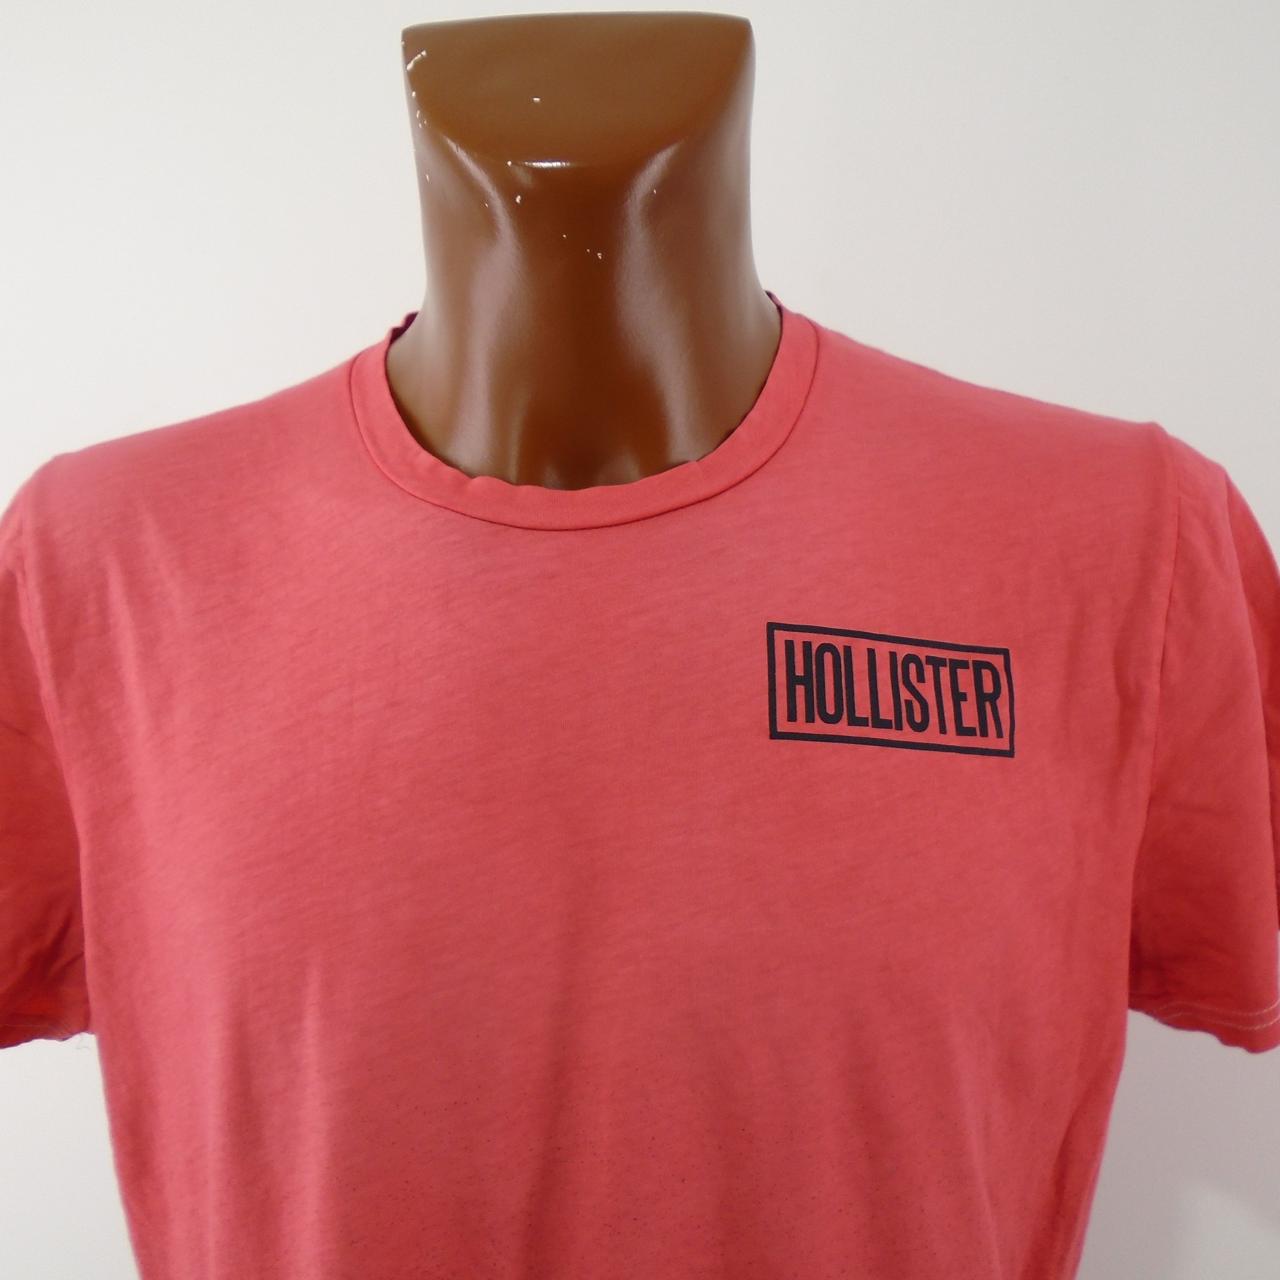 Camiseta de hombre Hollister.  Rojo.  M.Usado.  Bien